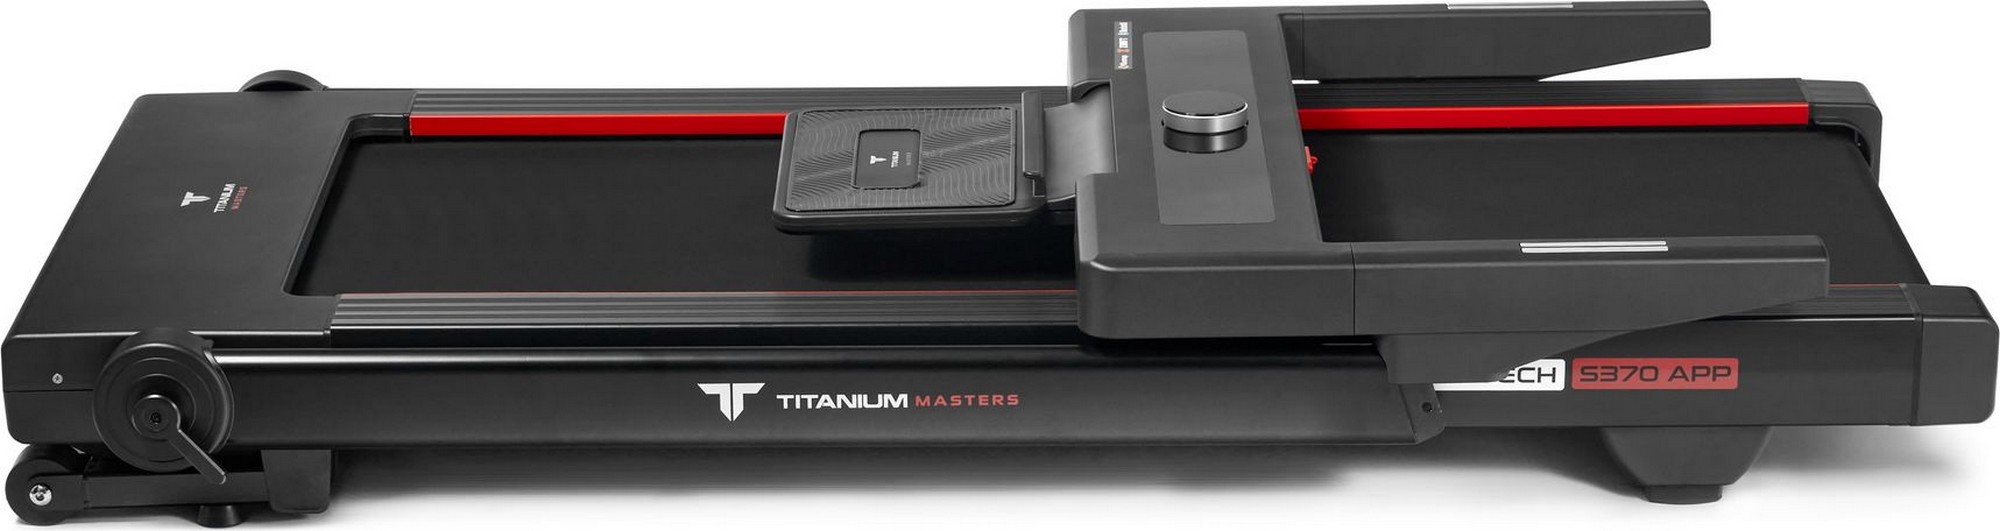 Беговая дорожка Titanium Masters Slimtech S370 APP 2000_531